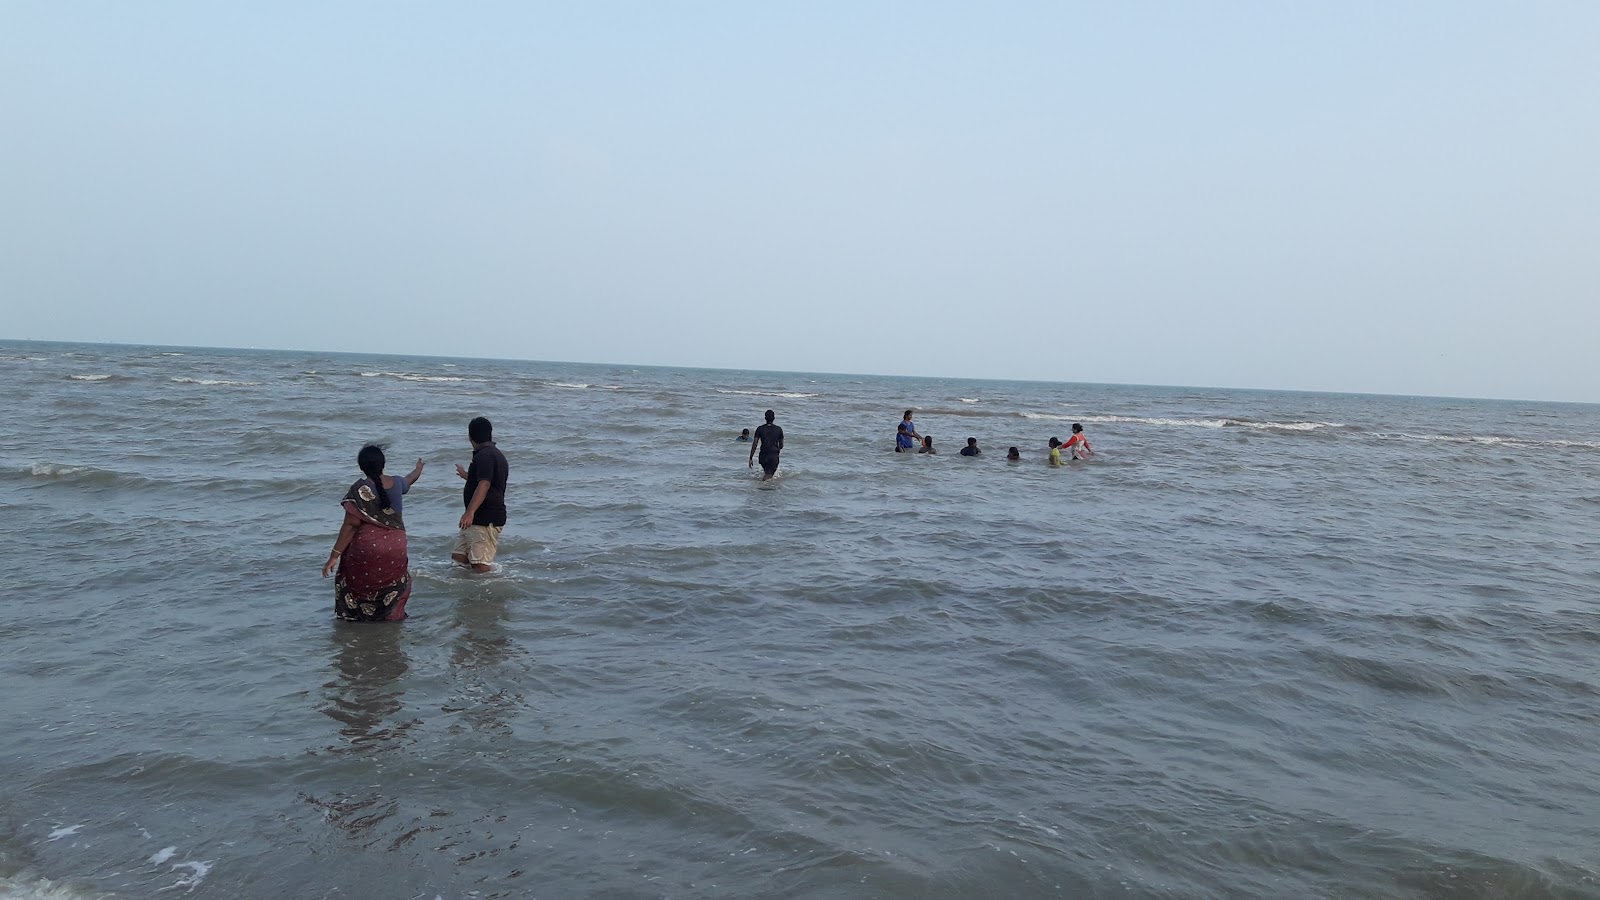 Rajamadam Beach'in fotoğrafı - rahatlamayı sevenler arasında popüler bir yer